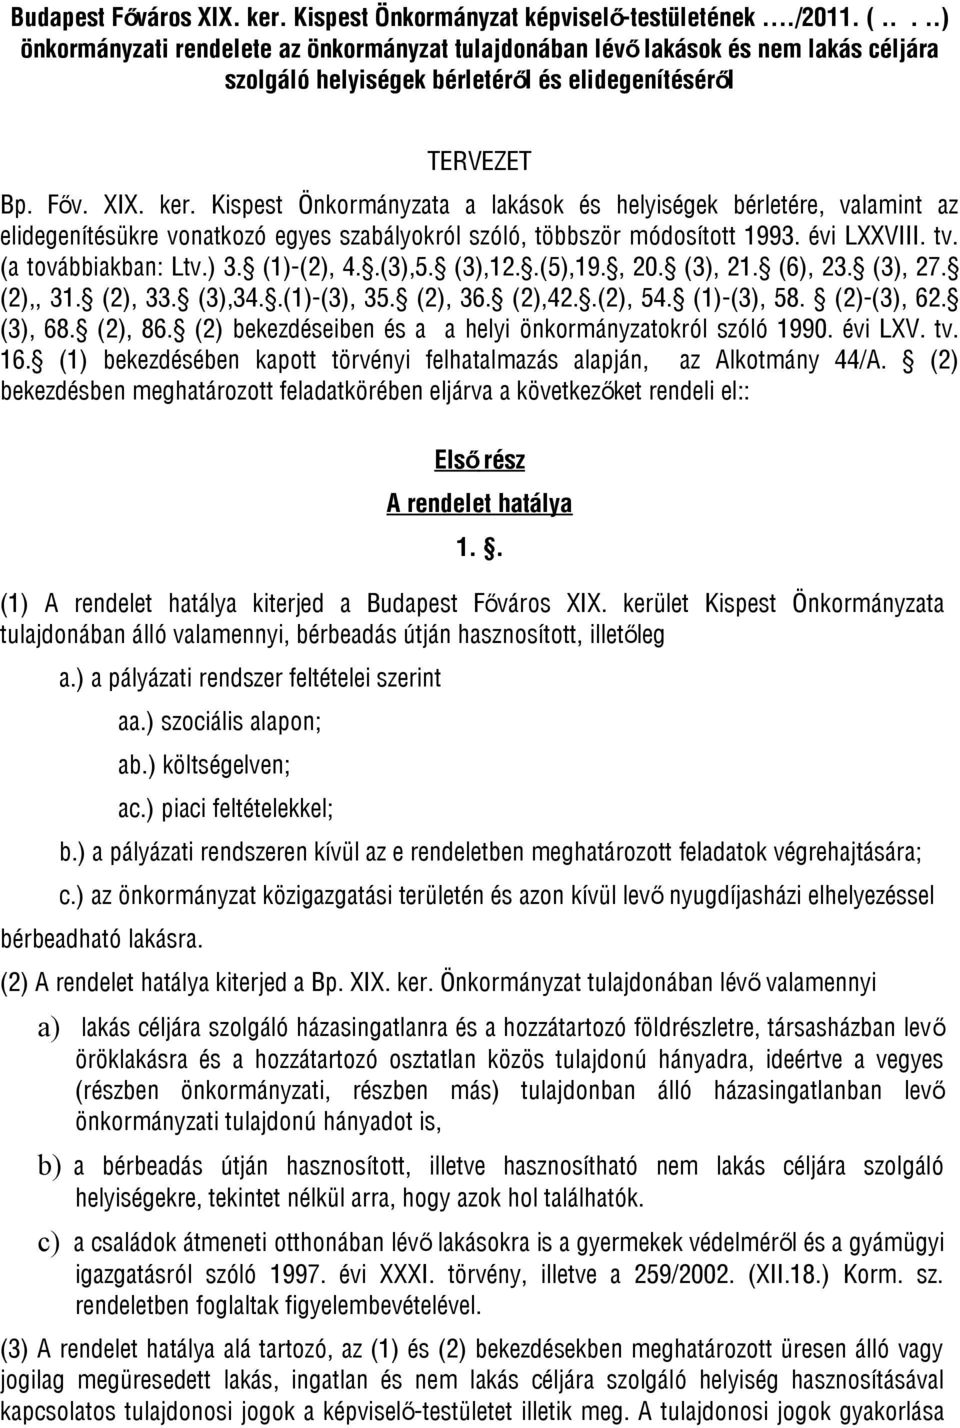 Kispest Önkormányzata a lakások és helyiségek bérletére, valamint az elidegenítésükre vonatkozó egyes szabályokról szóló, többször módosított 1993. évi LXXVIII. tv. (a továbbiakban: Ltv.) 3.